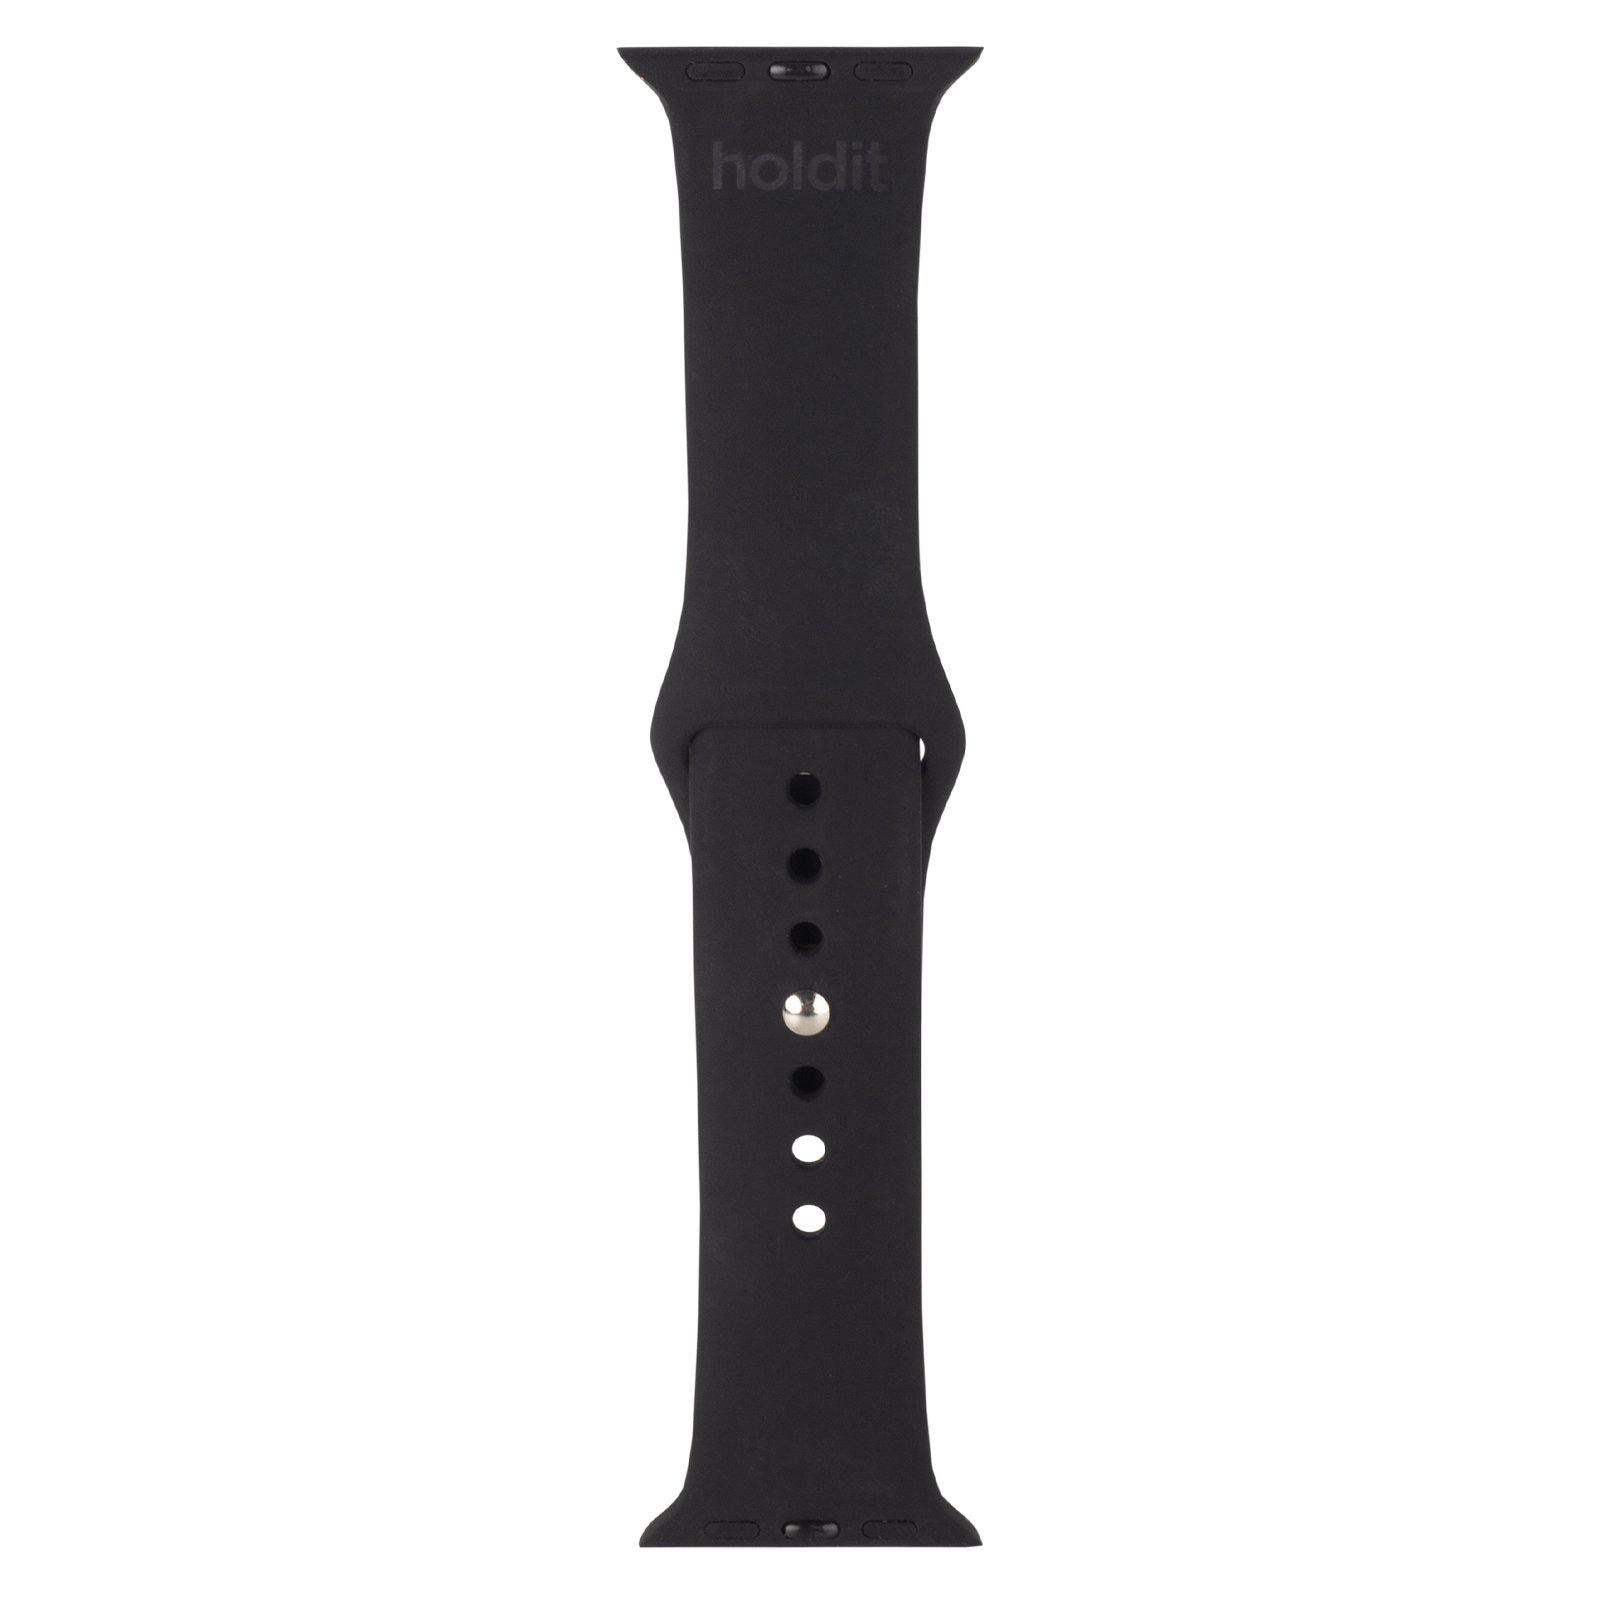 Bracelet en silicone Apple Watch SE 40mm, Black